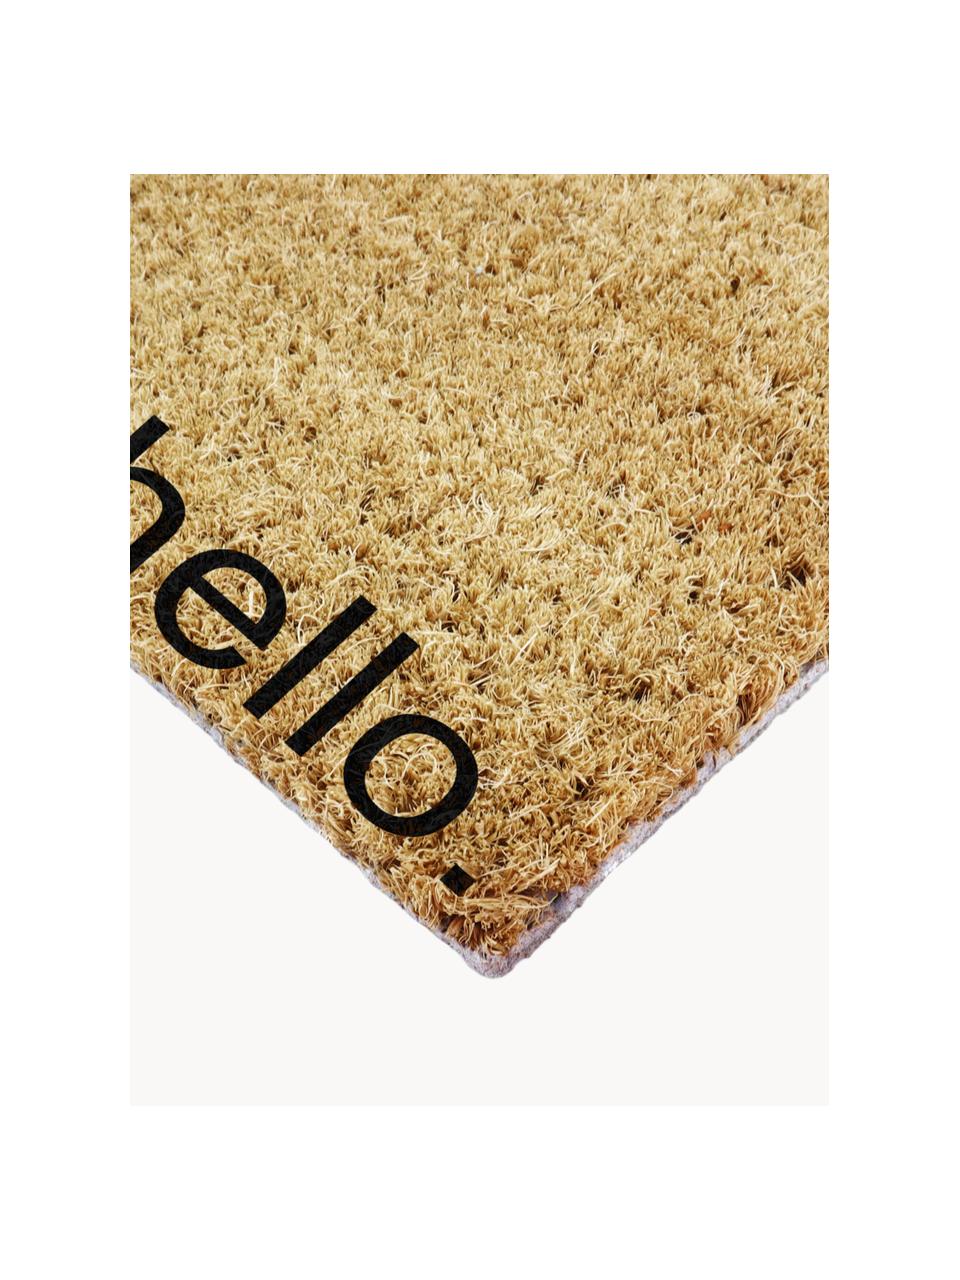 Fußmatte Hello Bye, Oberseite: Kokosfaser, Unterseite: Naturkautschuk, Hellbraun, Schwarz, B 40 x L 60 cm